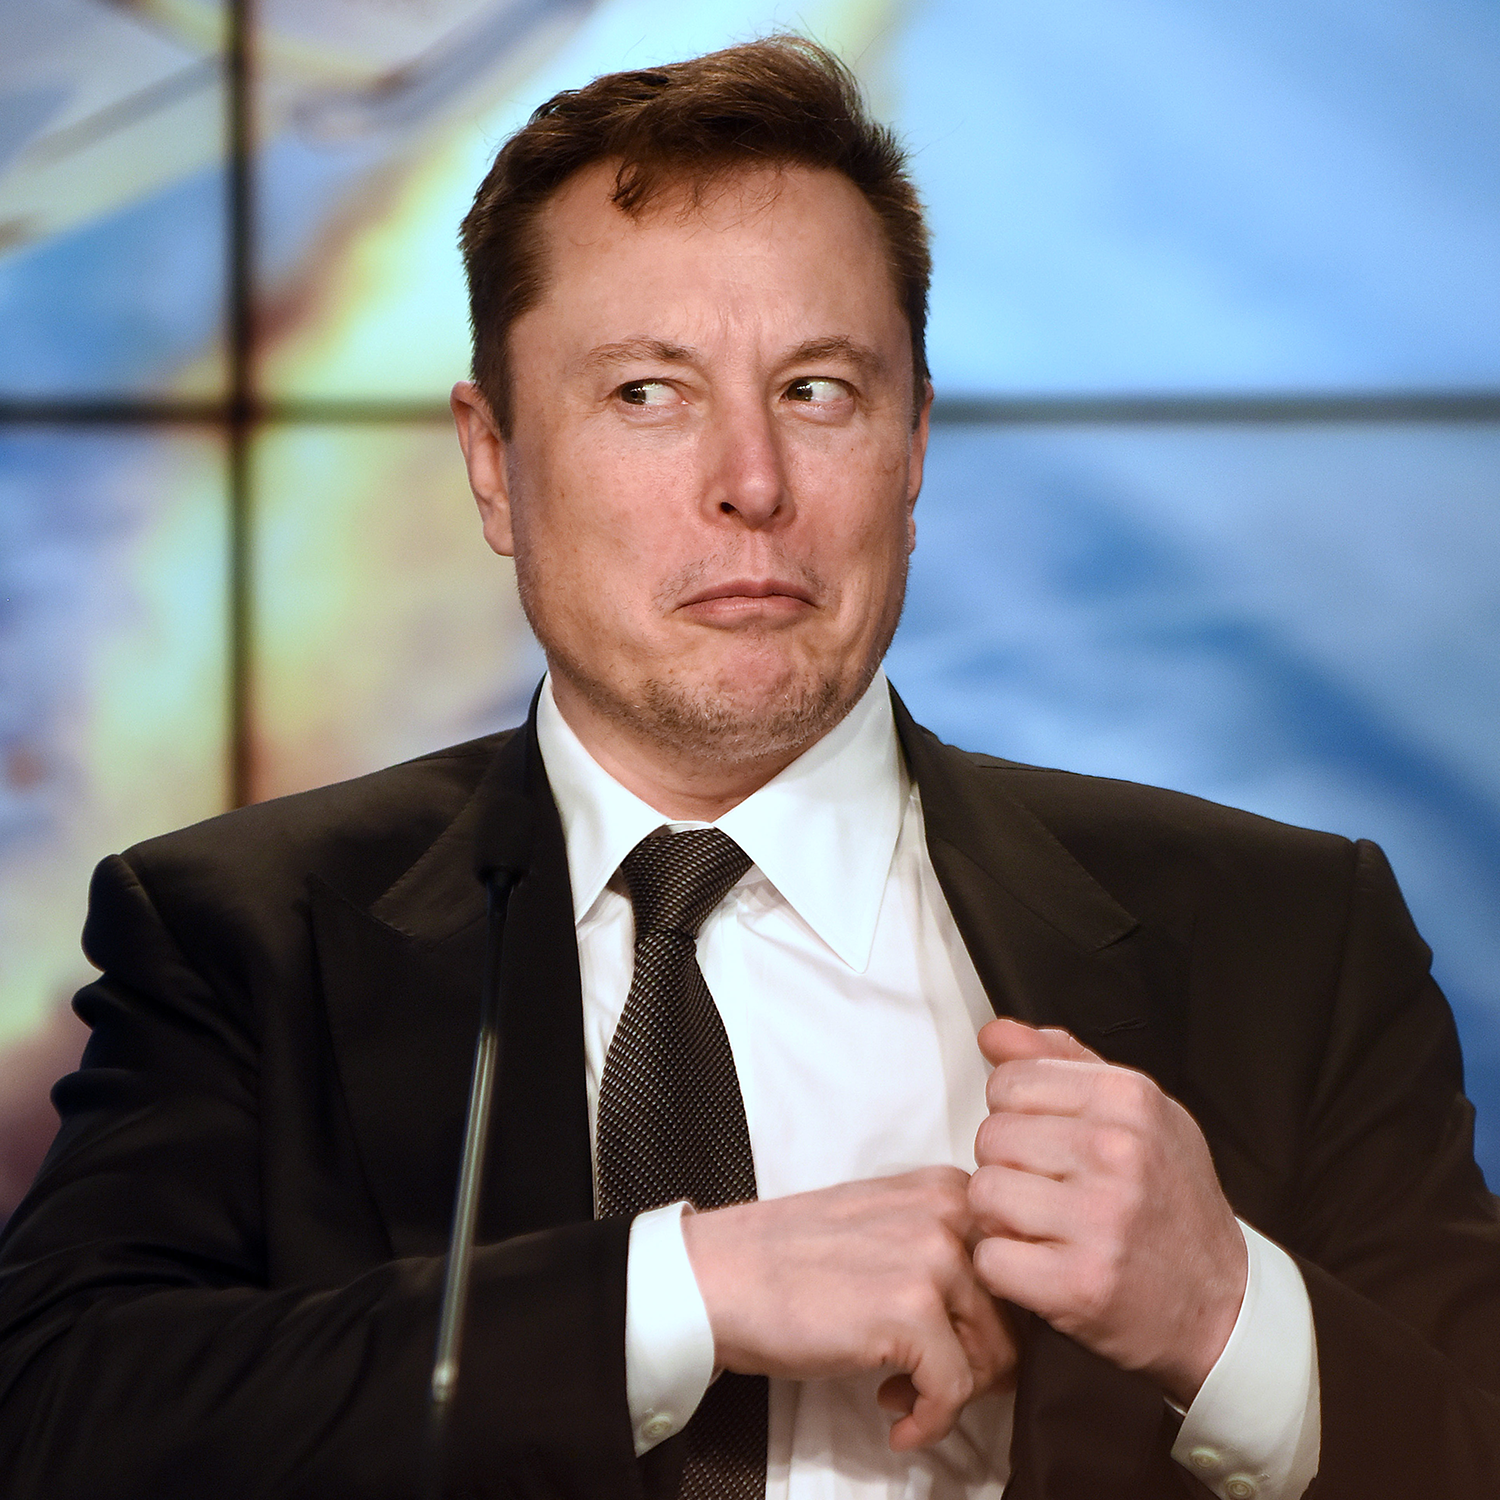 A photo of Elon Musk